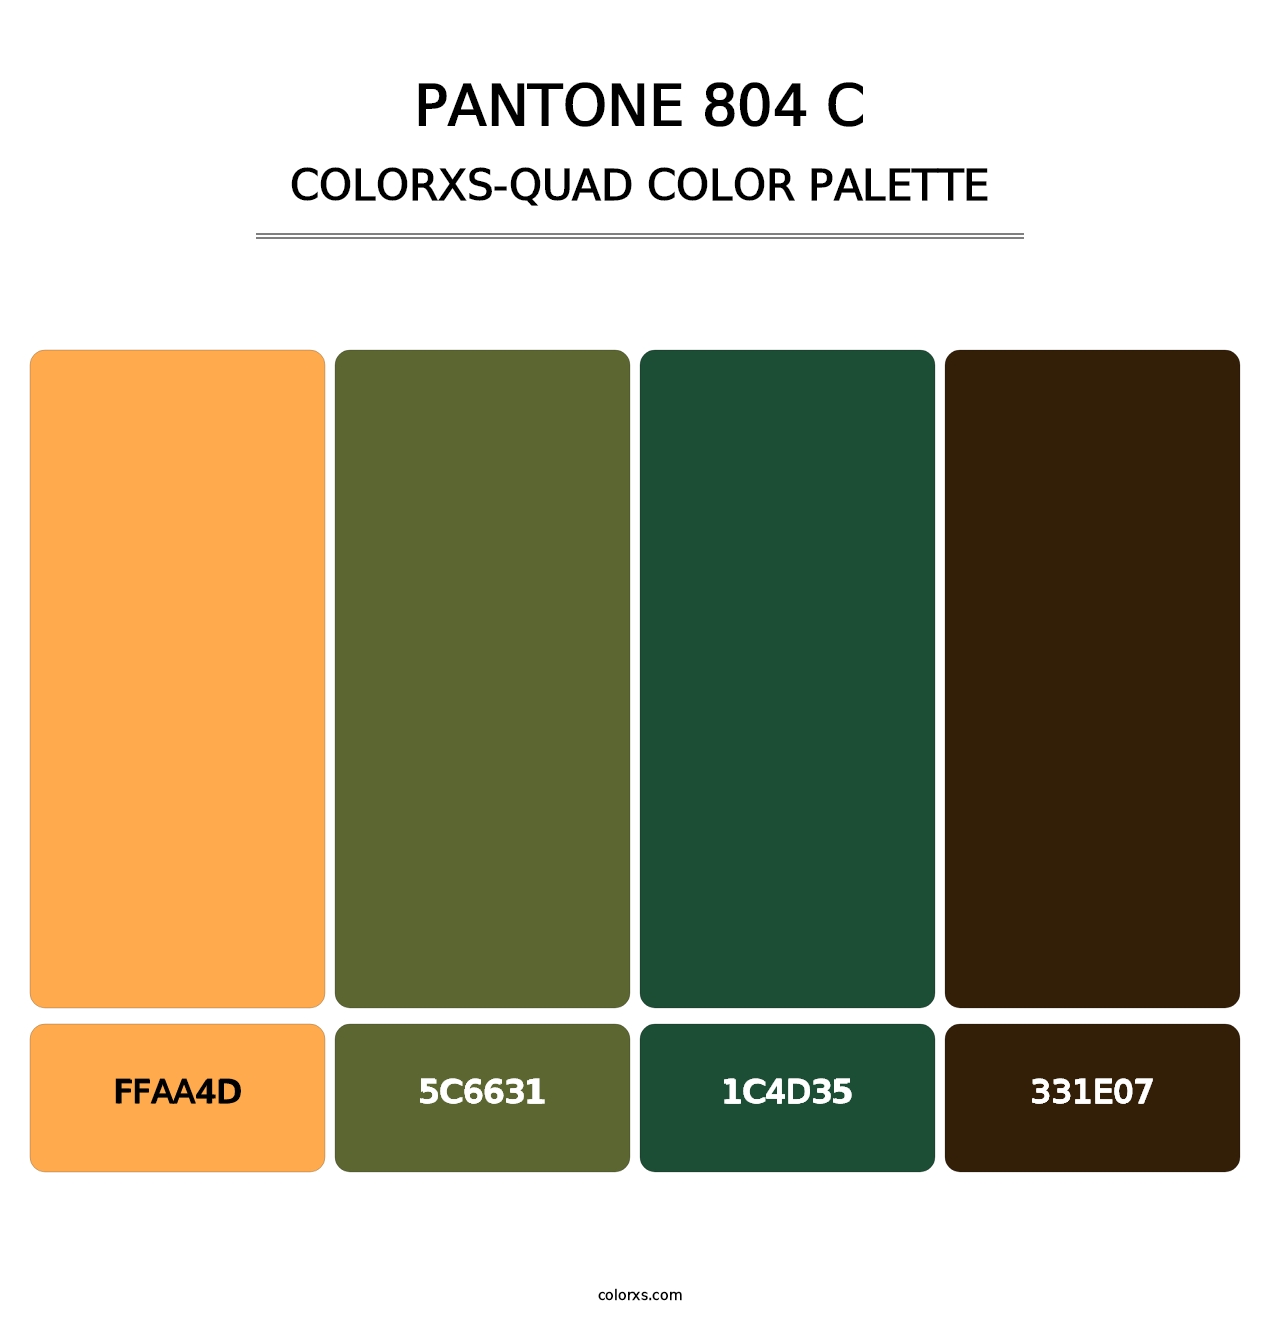 PANTONE 804 C - Colorxs Quad Palette